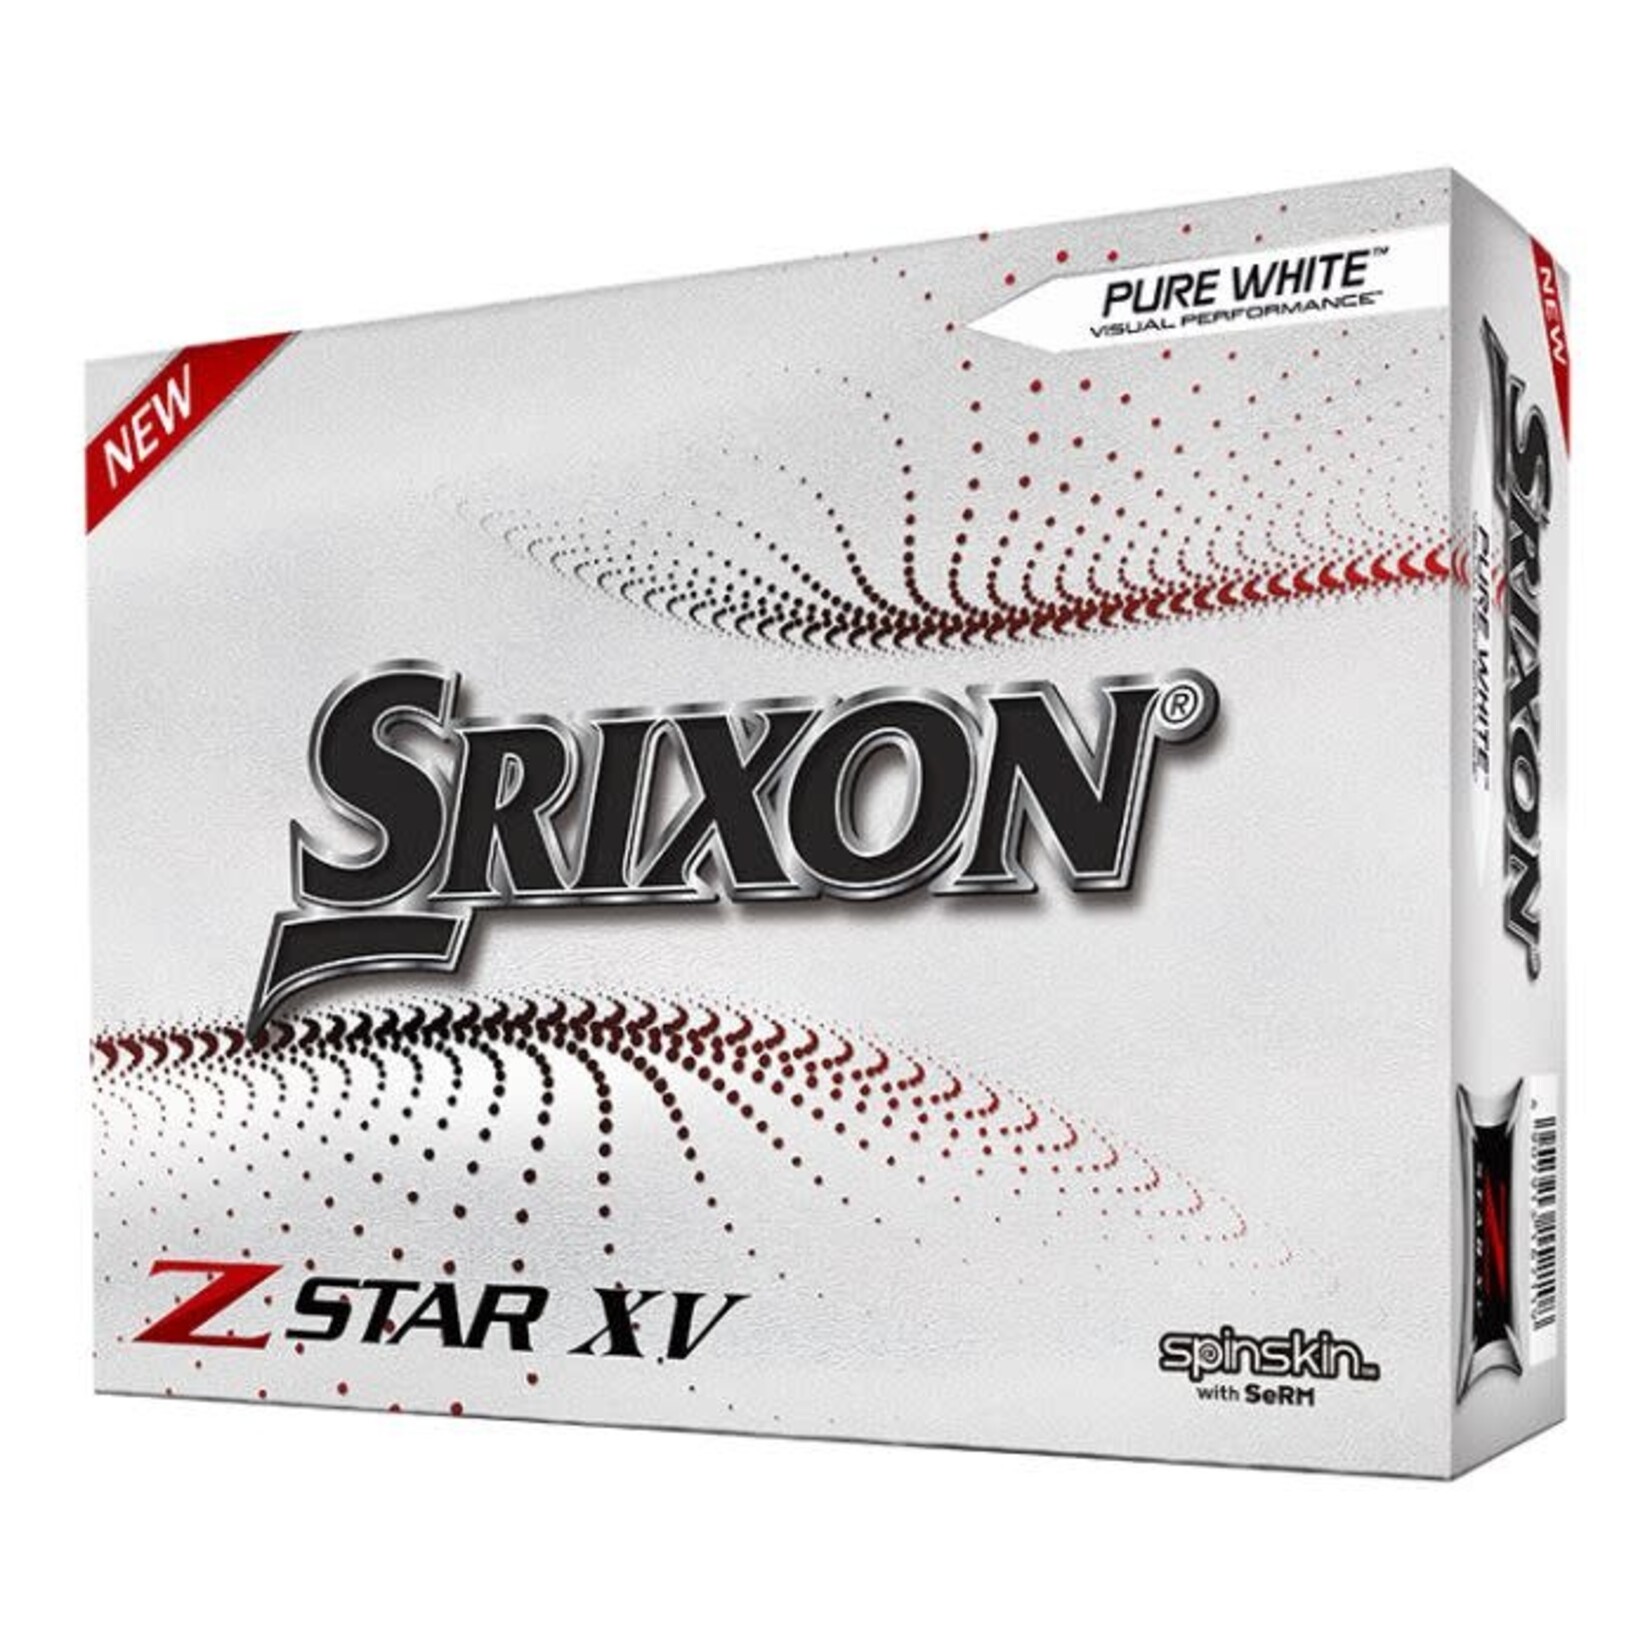 Srixon Srixon Z-Star XV Pure White Golf Balls